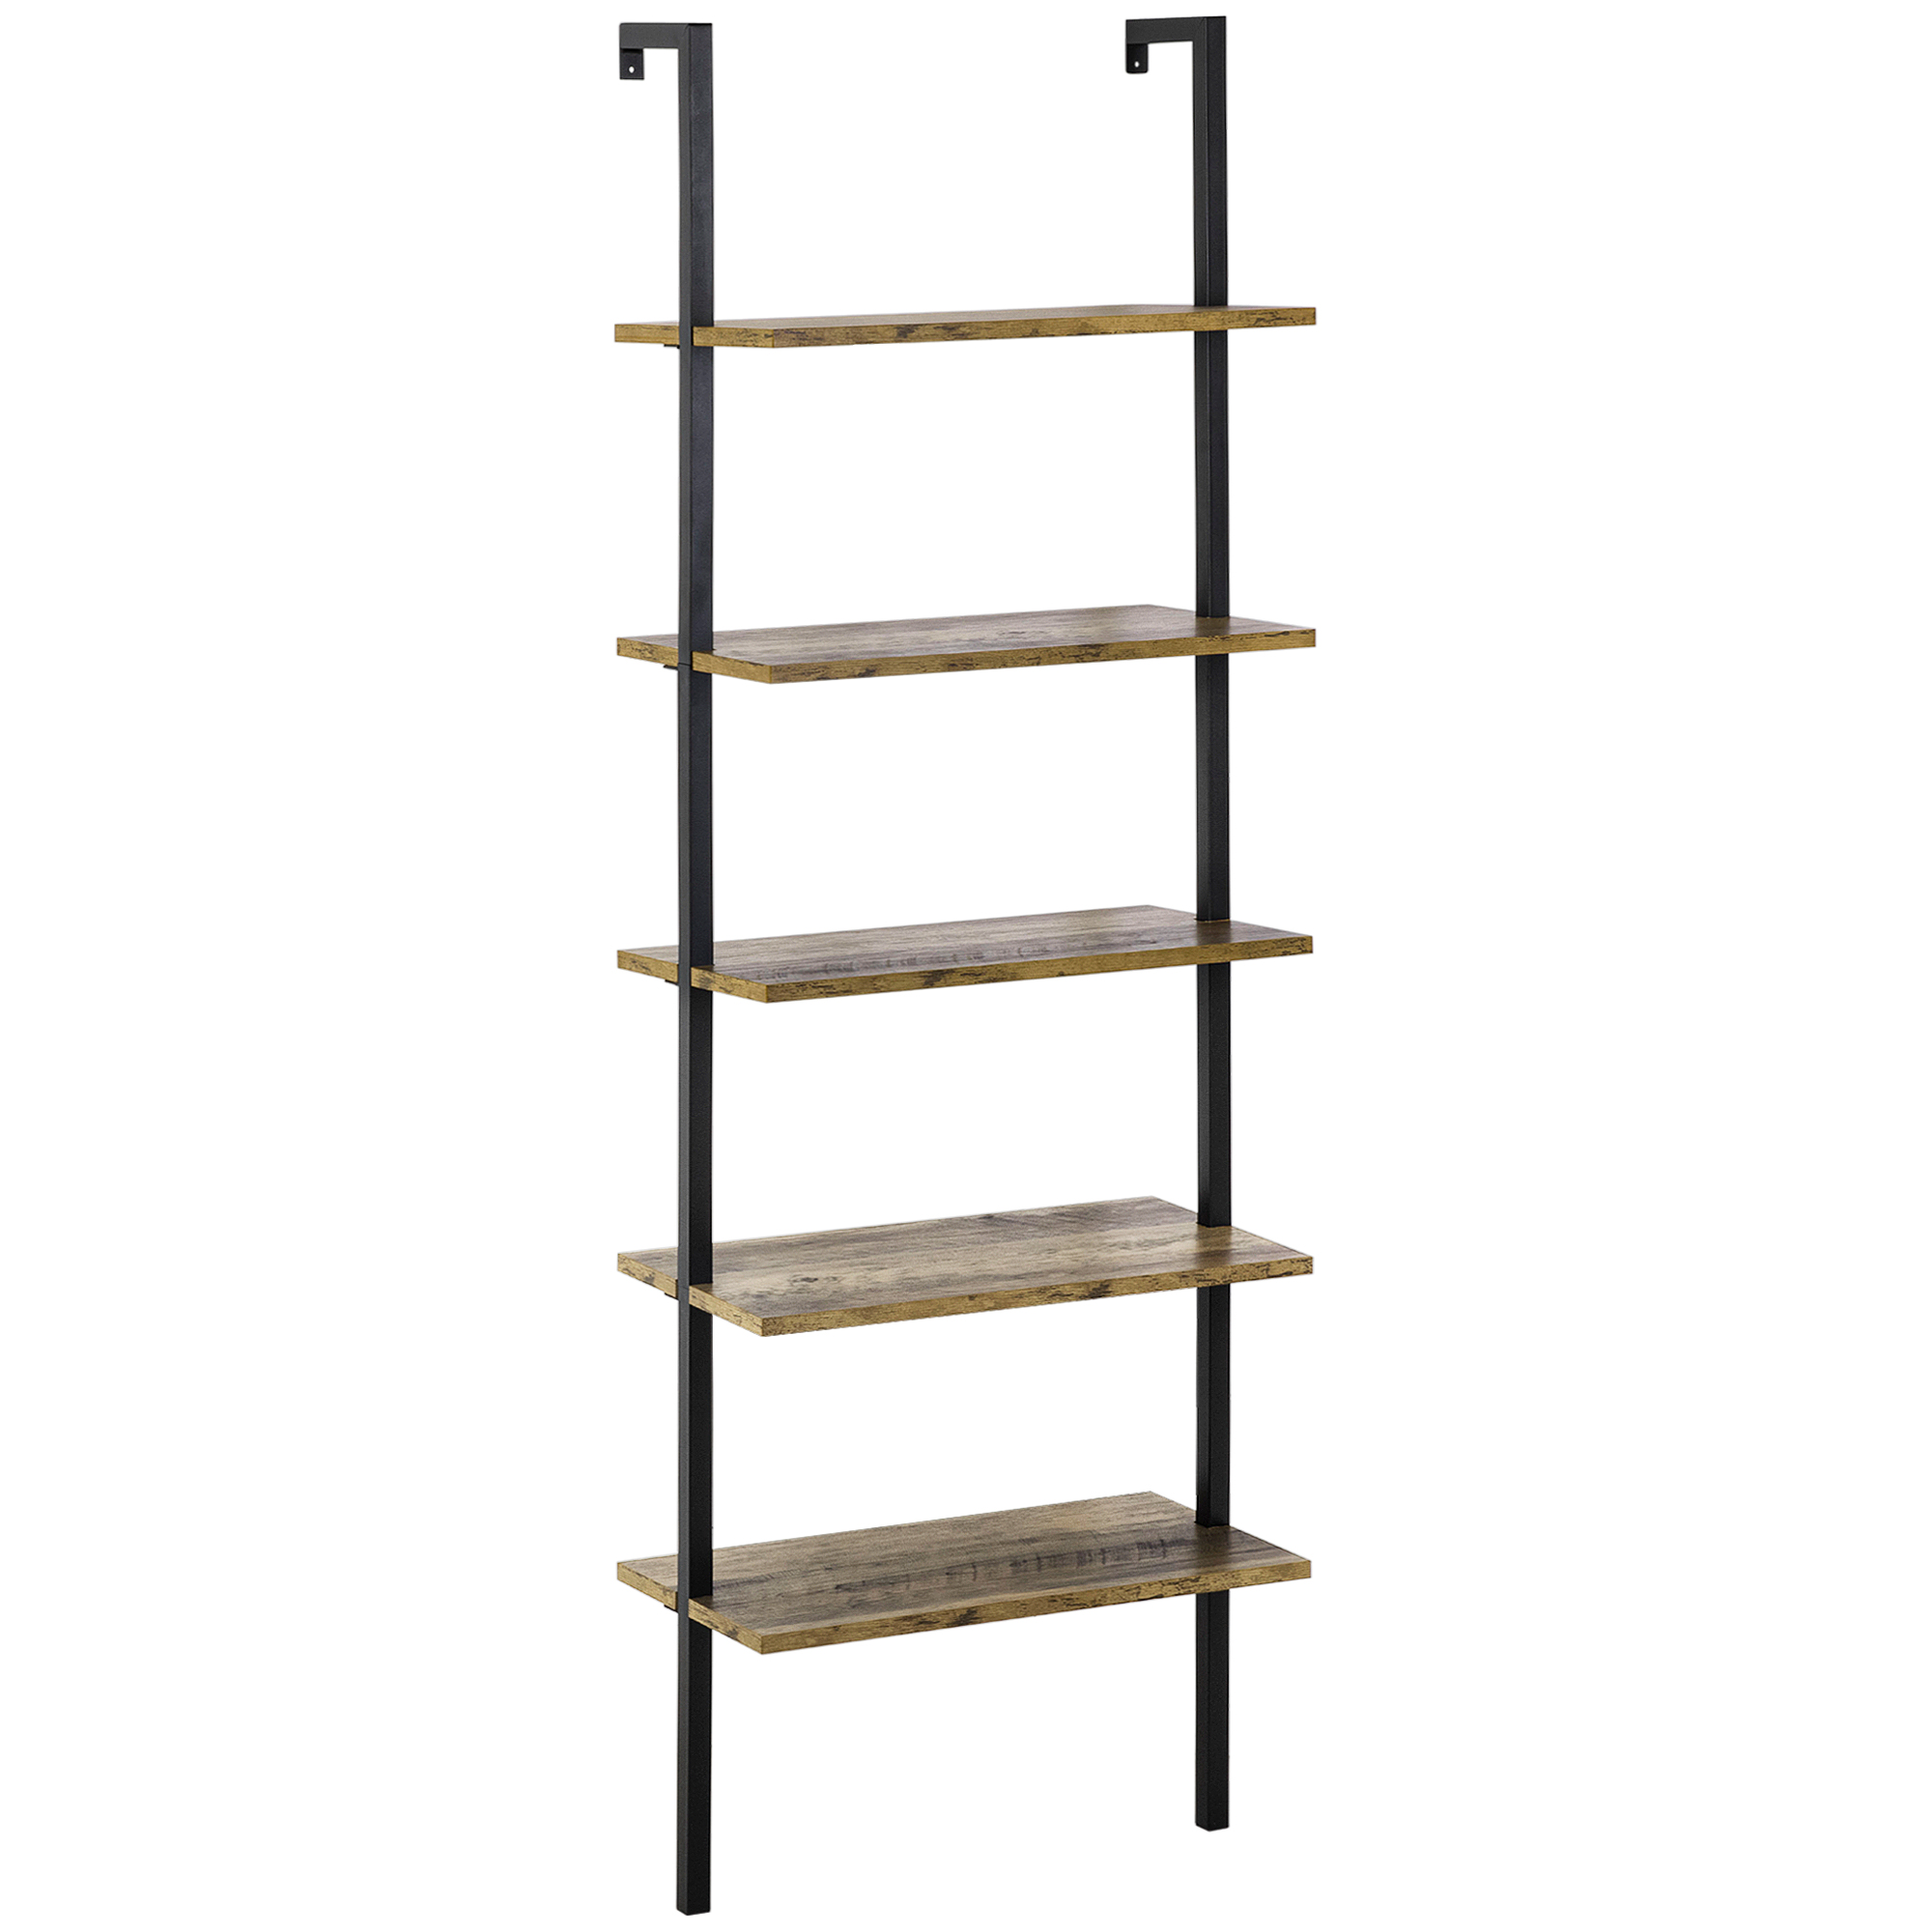 Βιβλιοθήκη HOMCOM Ladder με 5 ράφια σε βιομηχανικό στυλ σε ξύλο και μέταλλο